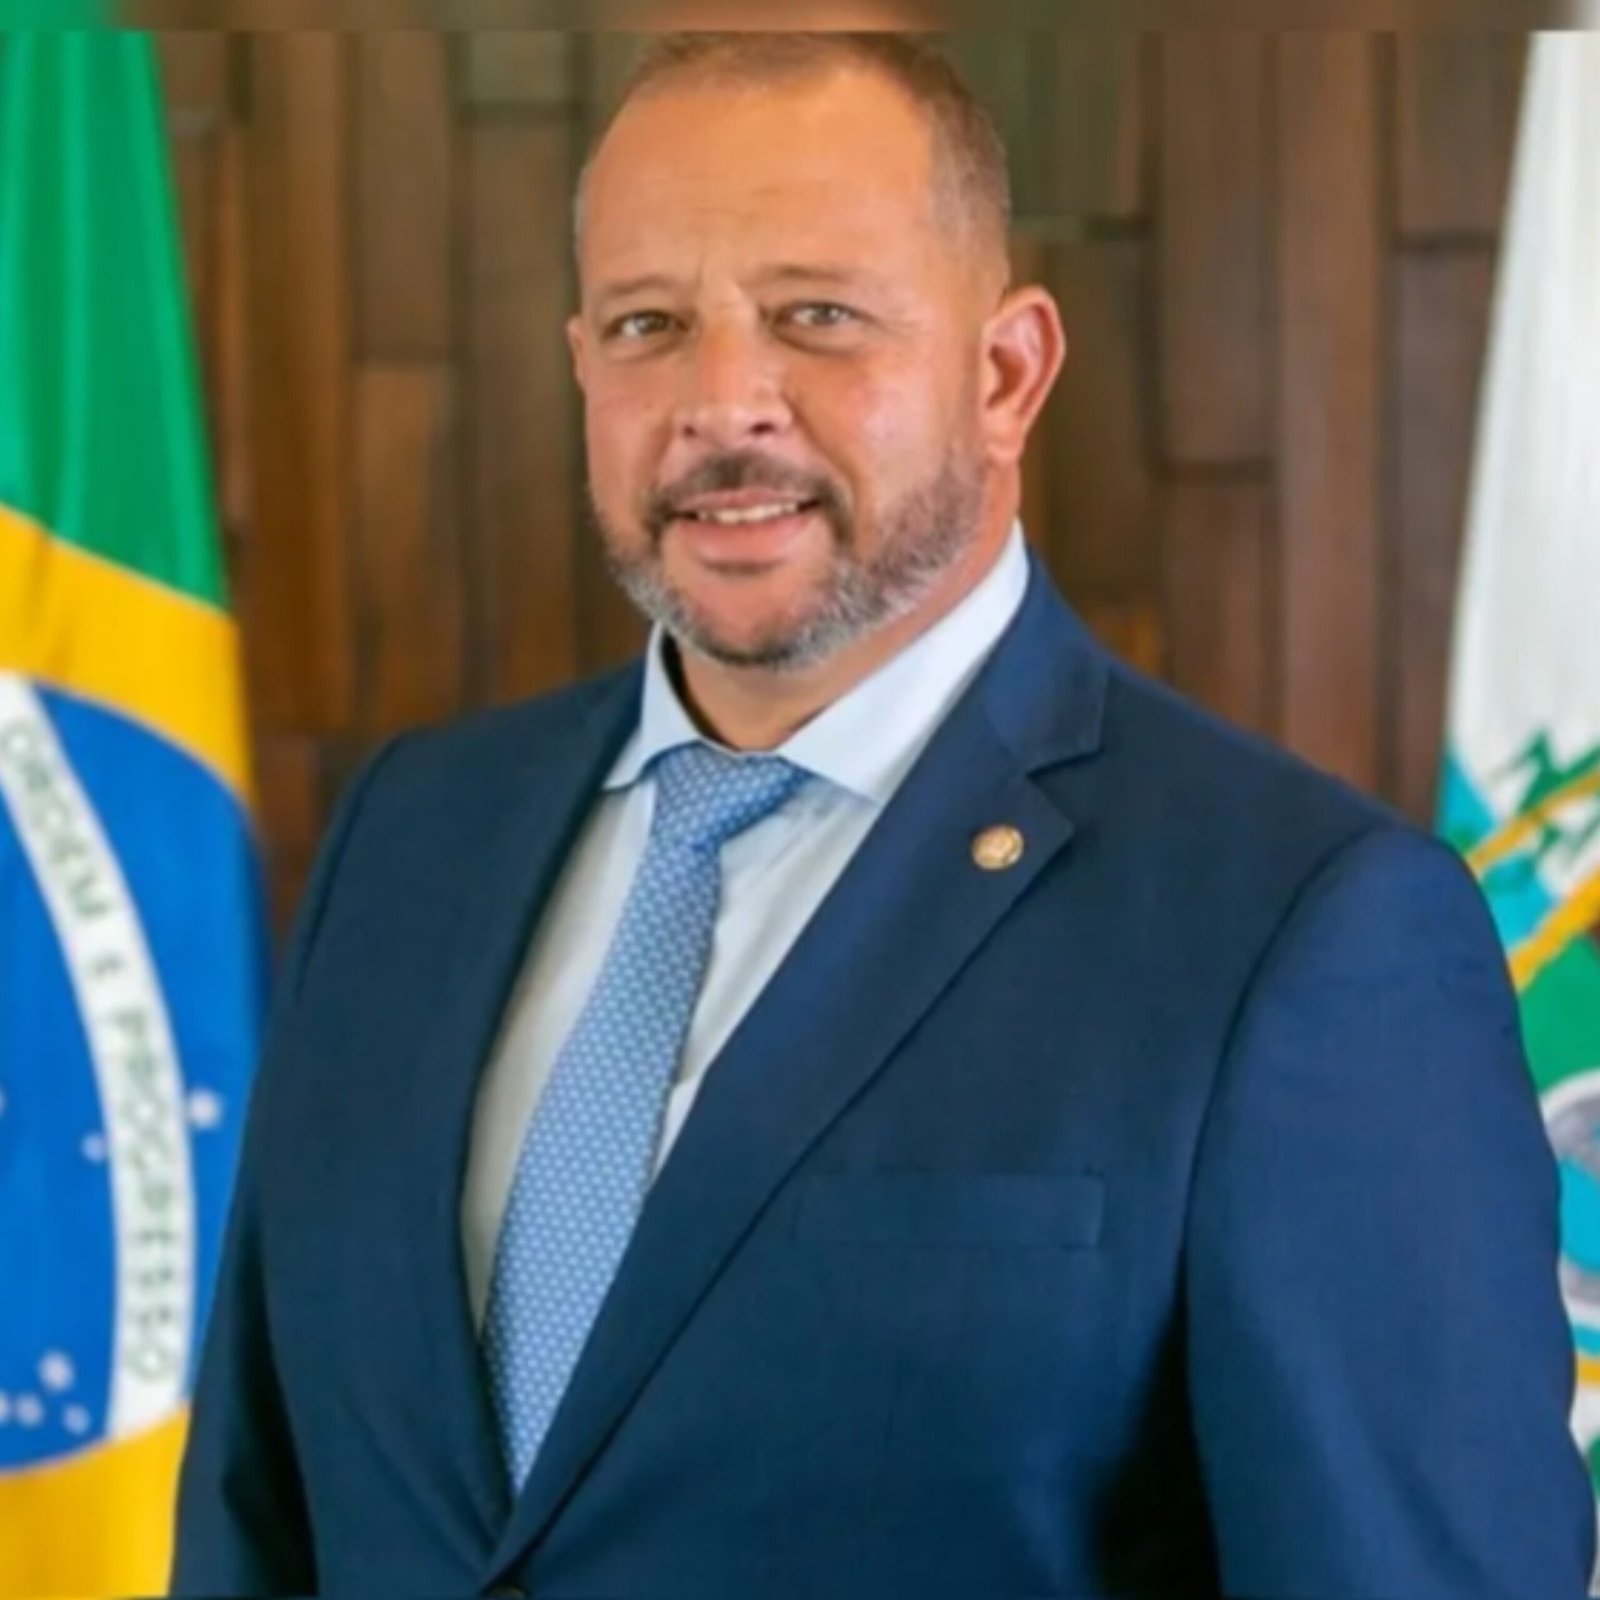 Deputado estadual troca tiros com suspeitos em Itaboraí